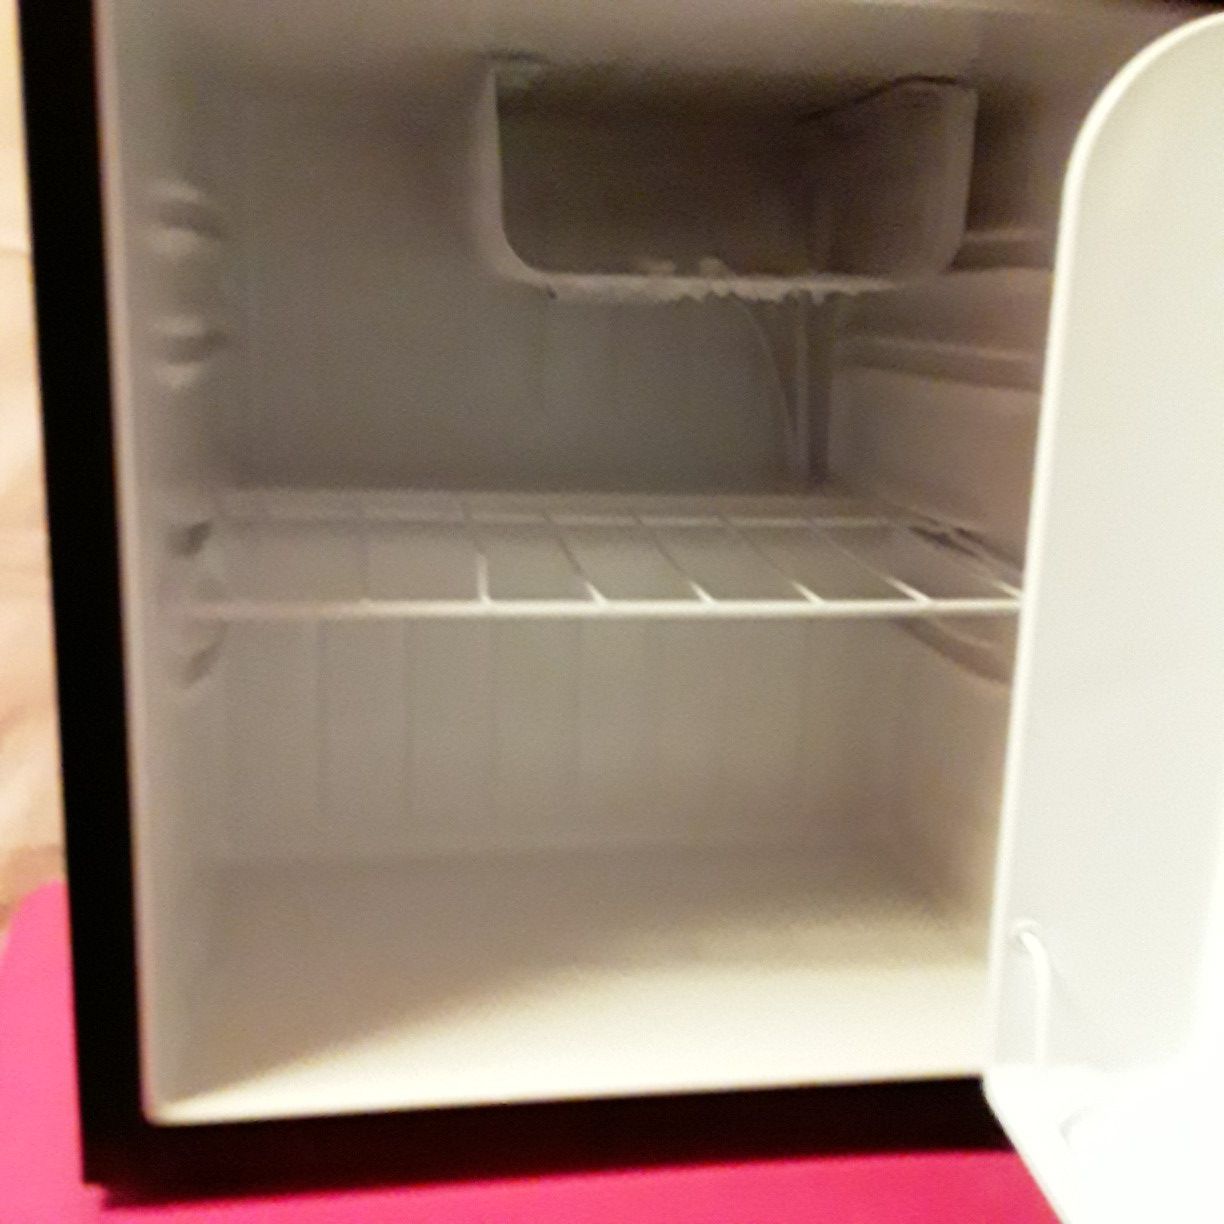 Brand new week old mini fridge